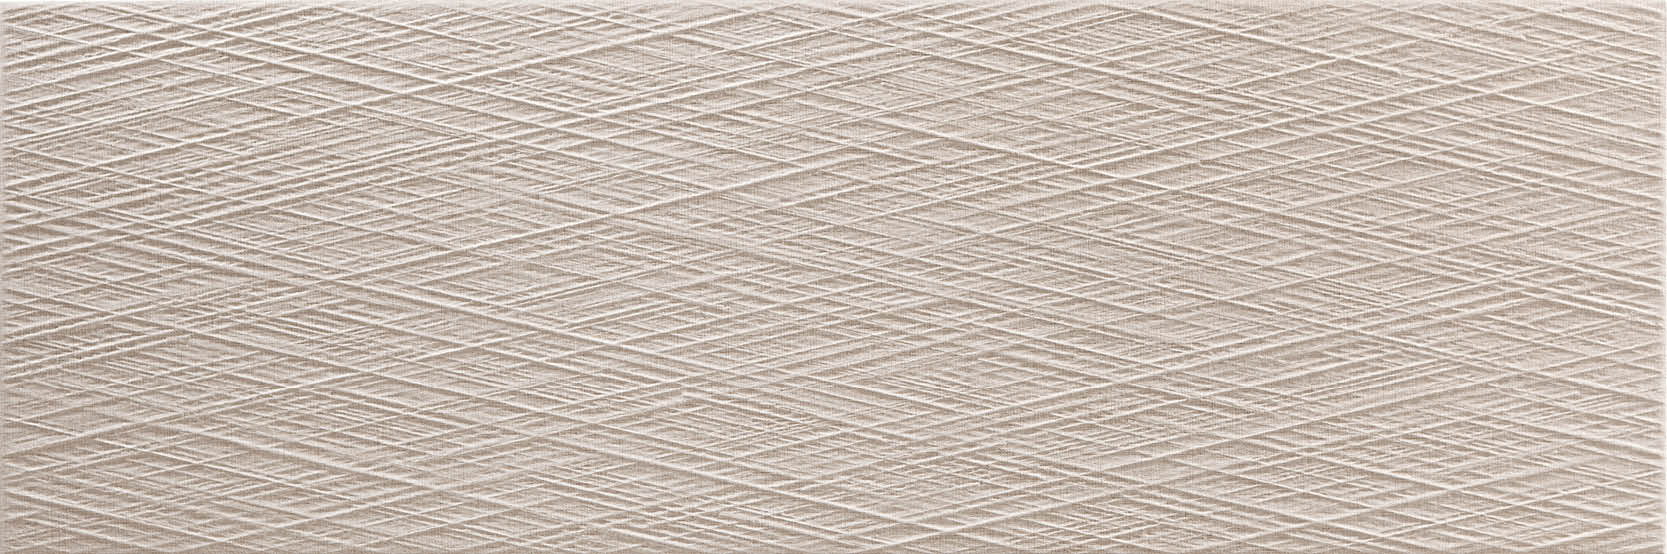 sammys-designer-flooring-tile-full-size-toulouse-beige-fibre.jpg